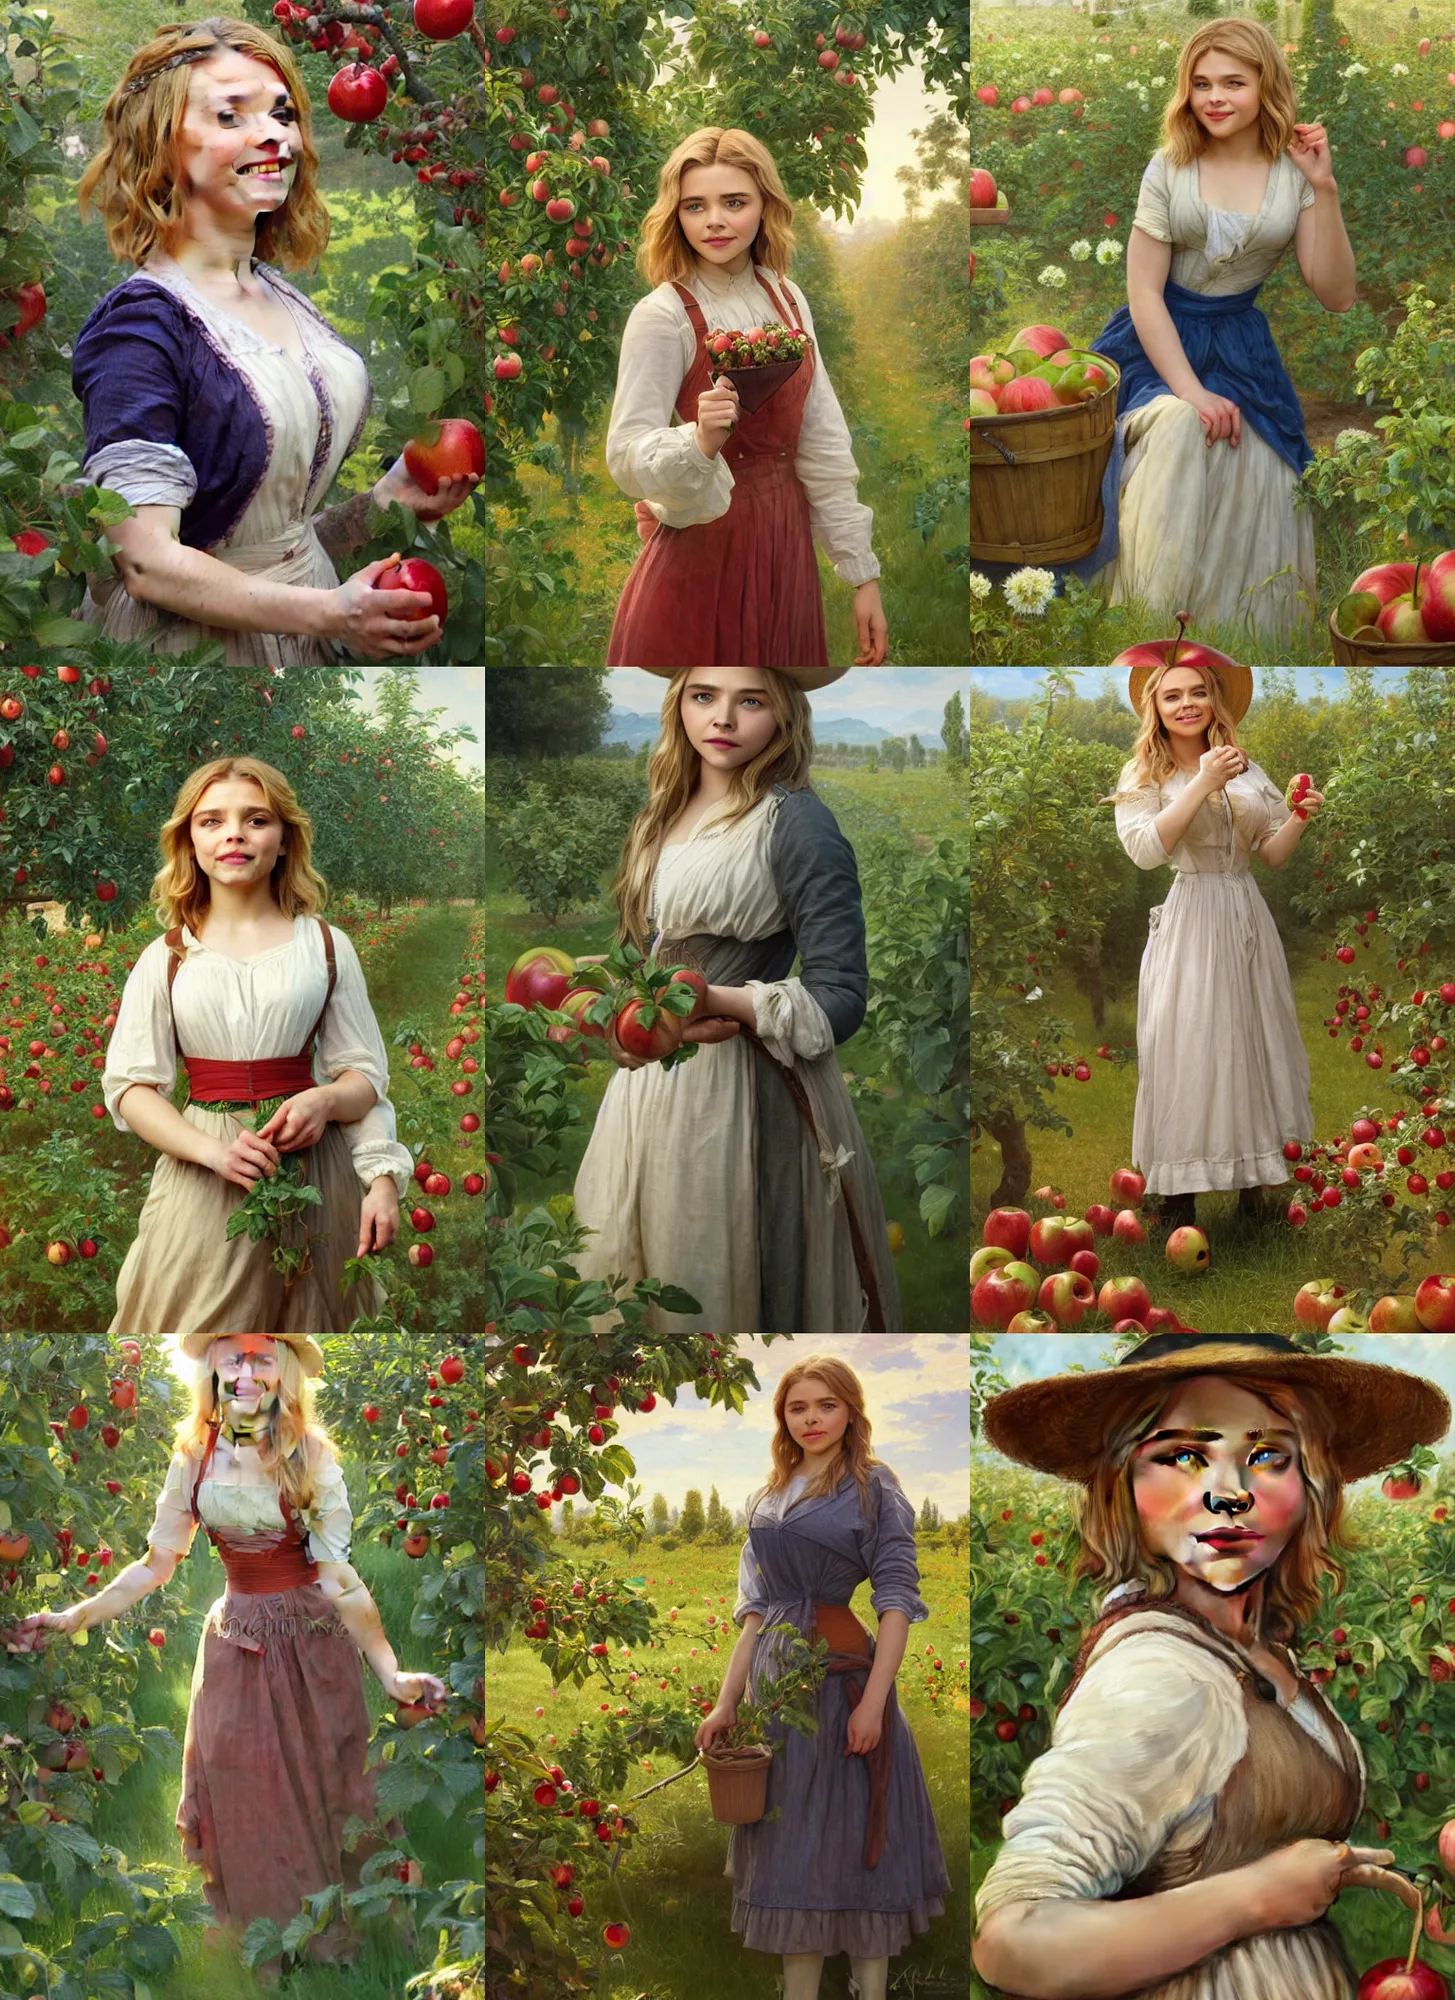 Prompt: portrait smiling hot chloe moretz as gardener in apple orchard, full length shot, shining, 8k highly detailed, sharp focus, illustration, art by artgerm, mucha, bouguereau